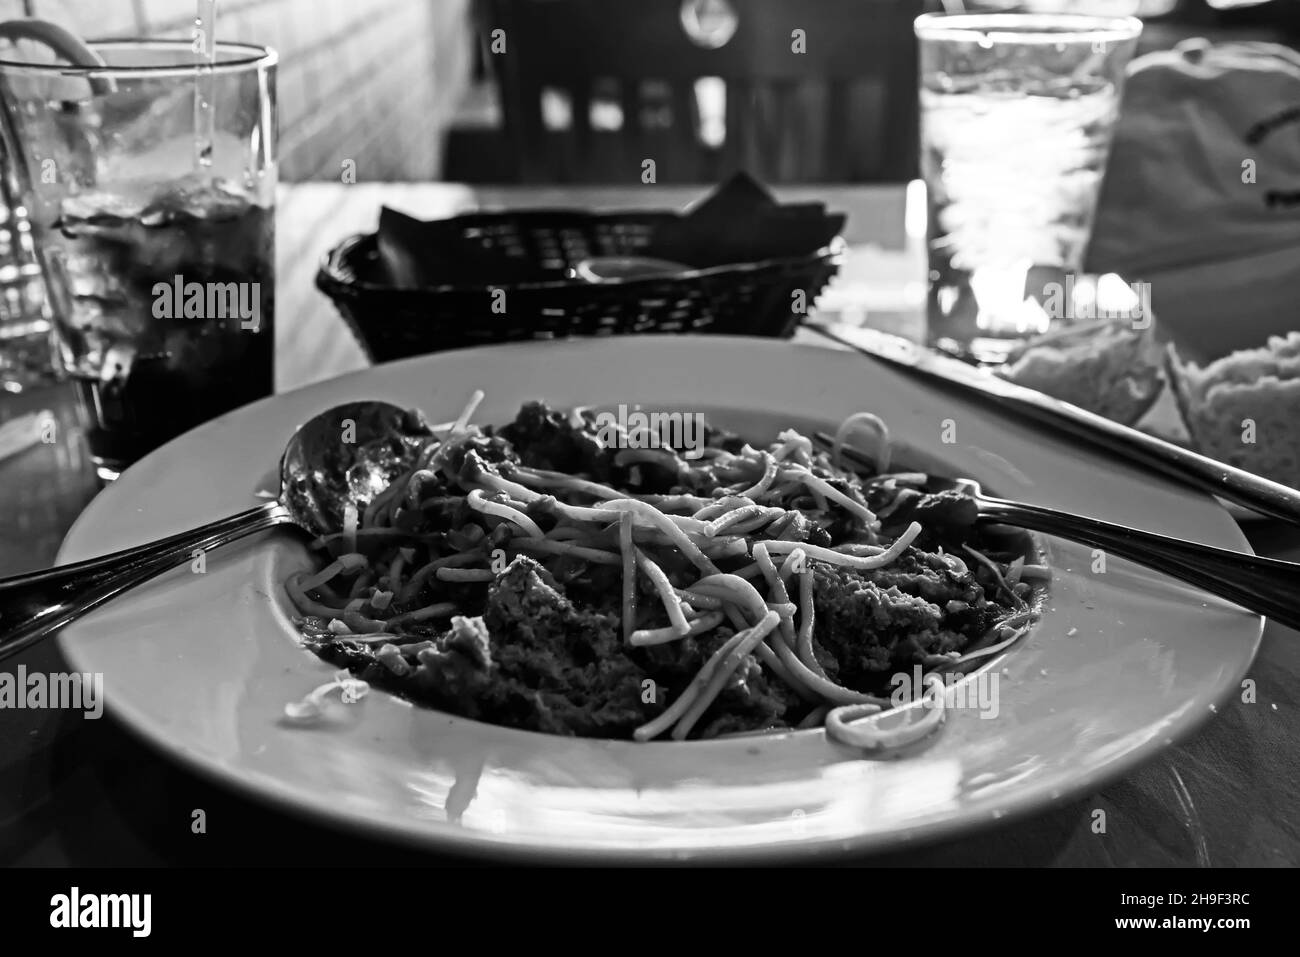 Image en noir et blanc de spaghetti sur une plaque blanche.Déjeuner dans un restaurant italien. Banque D'Images